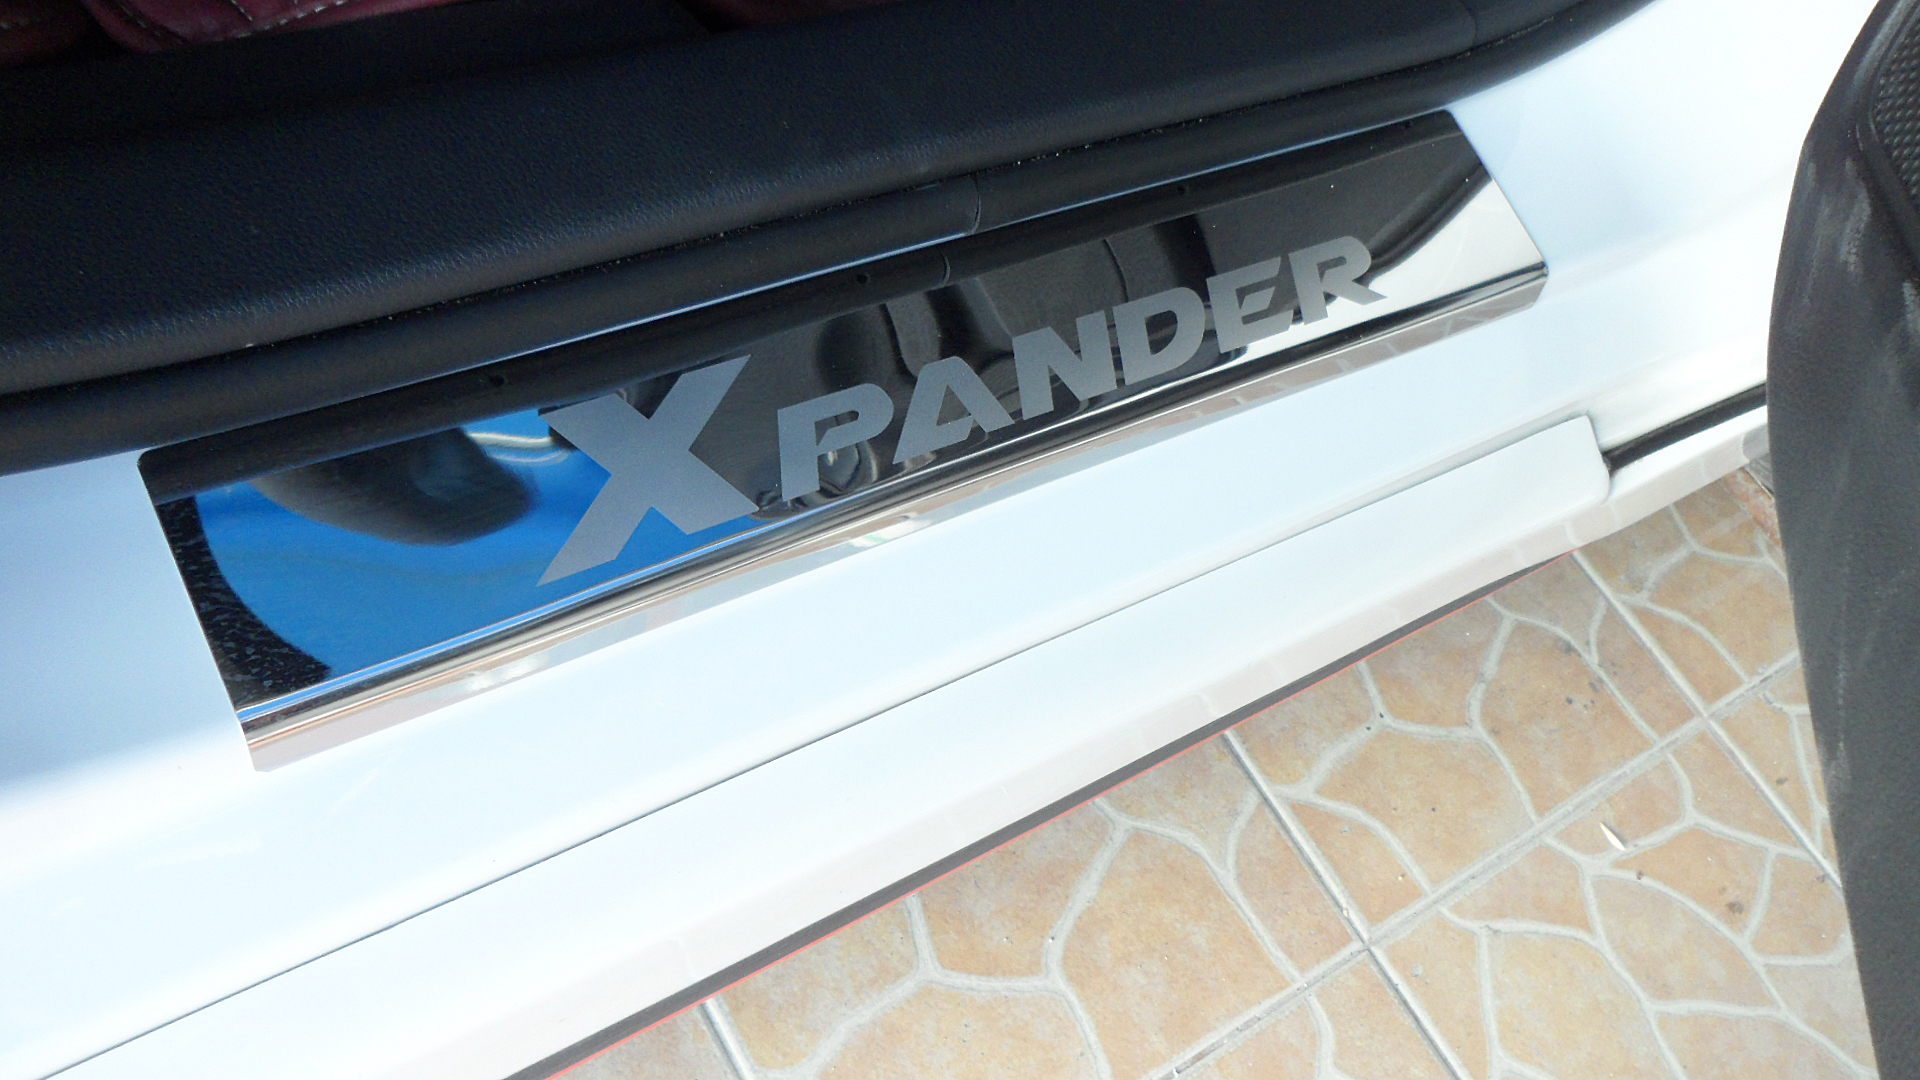 ชุดแต่ง Xpander ชายบันไดสแตนเลส